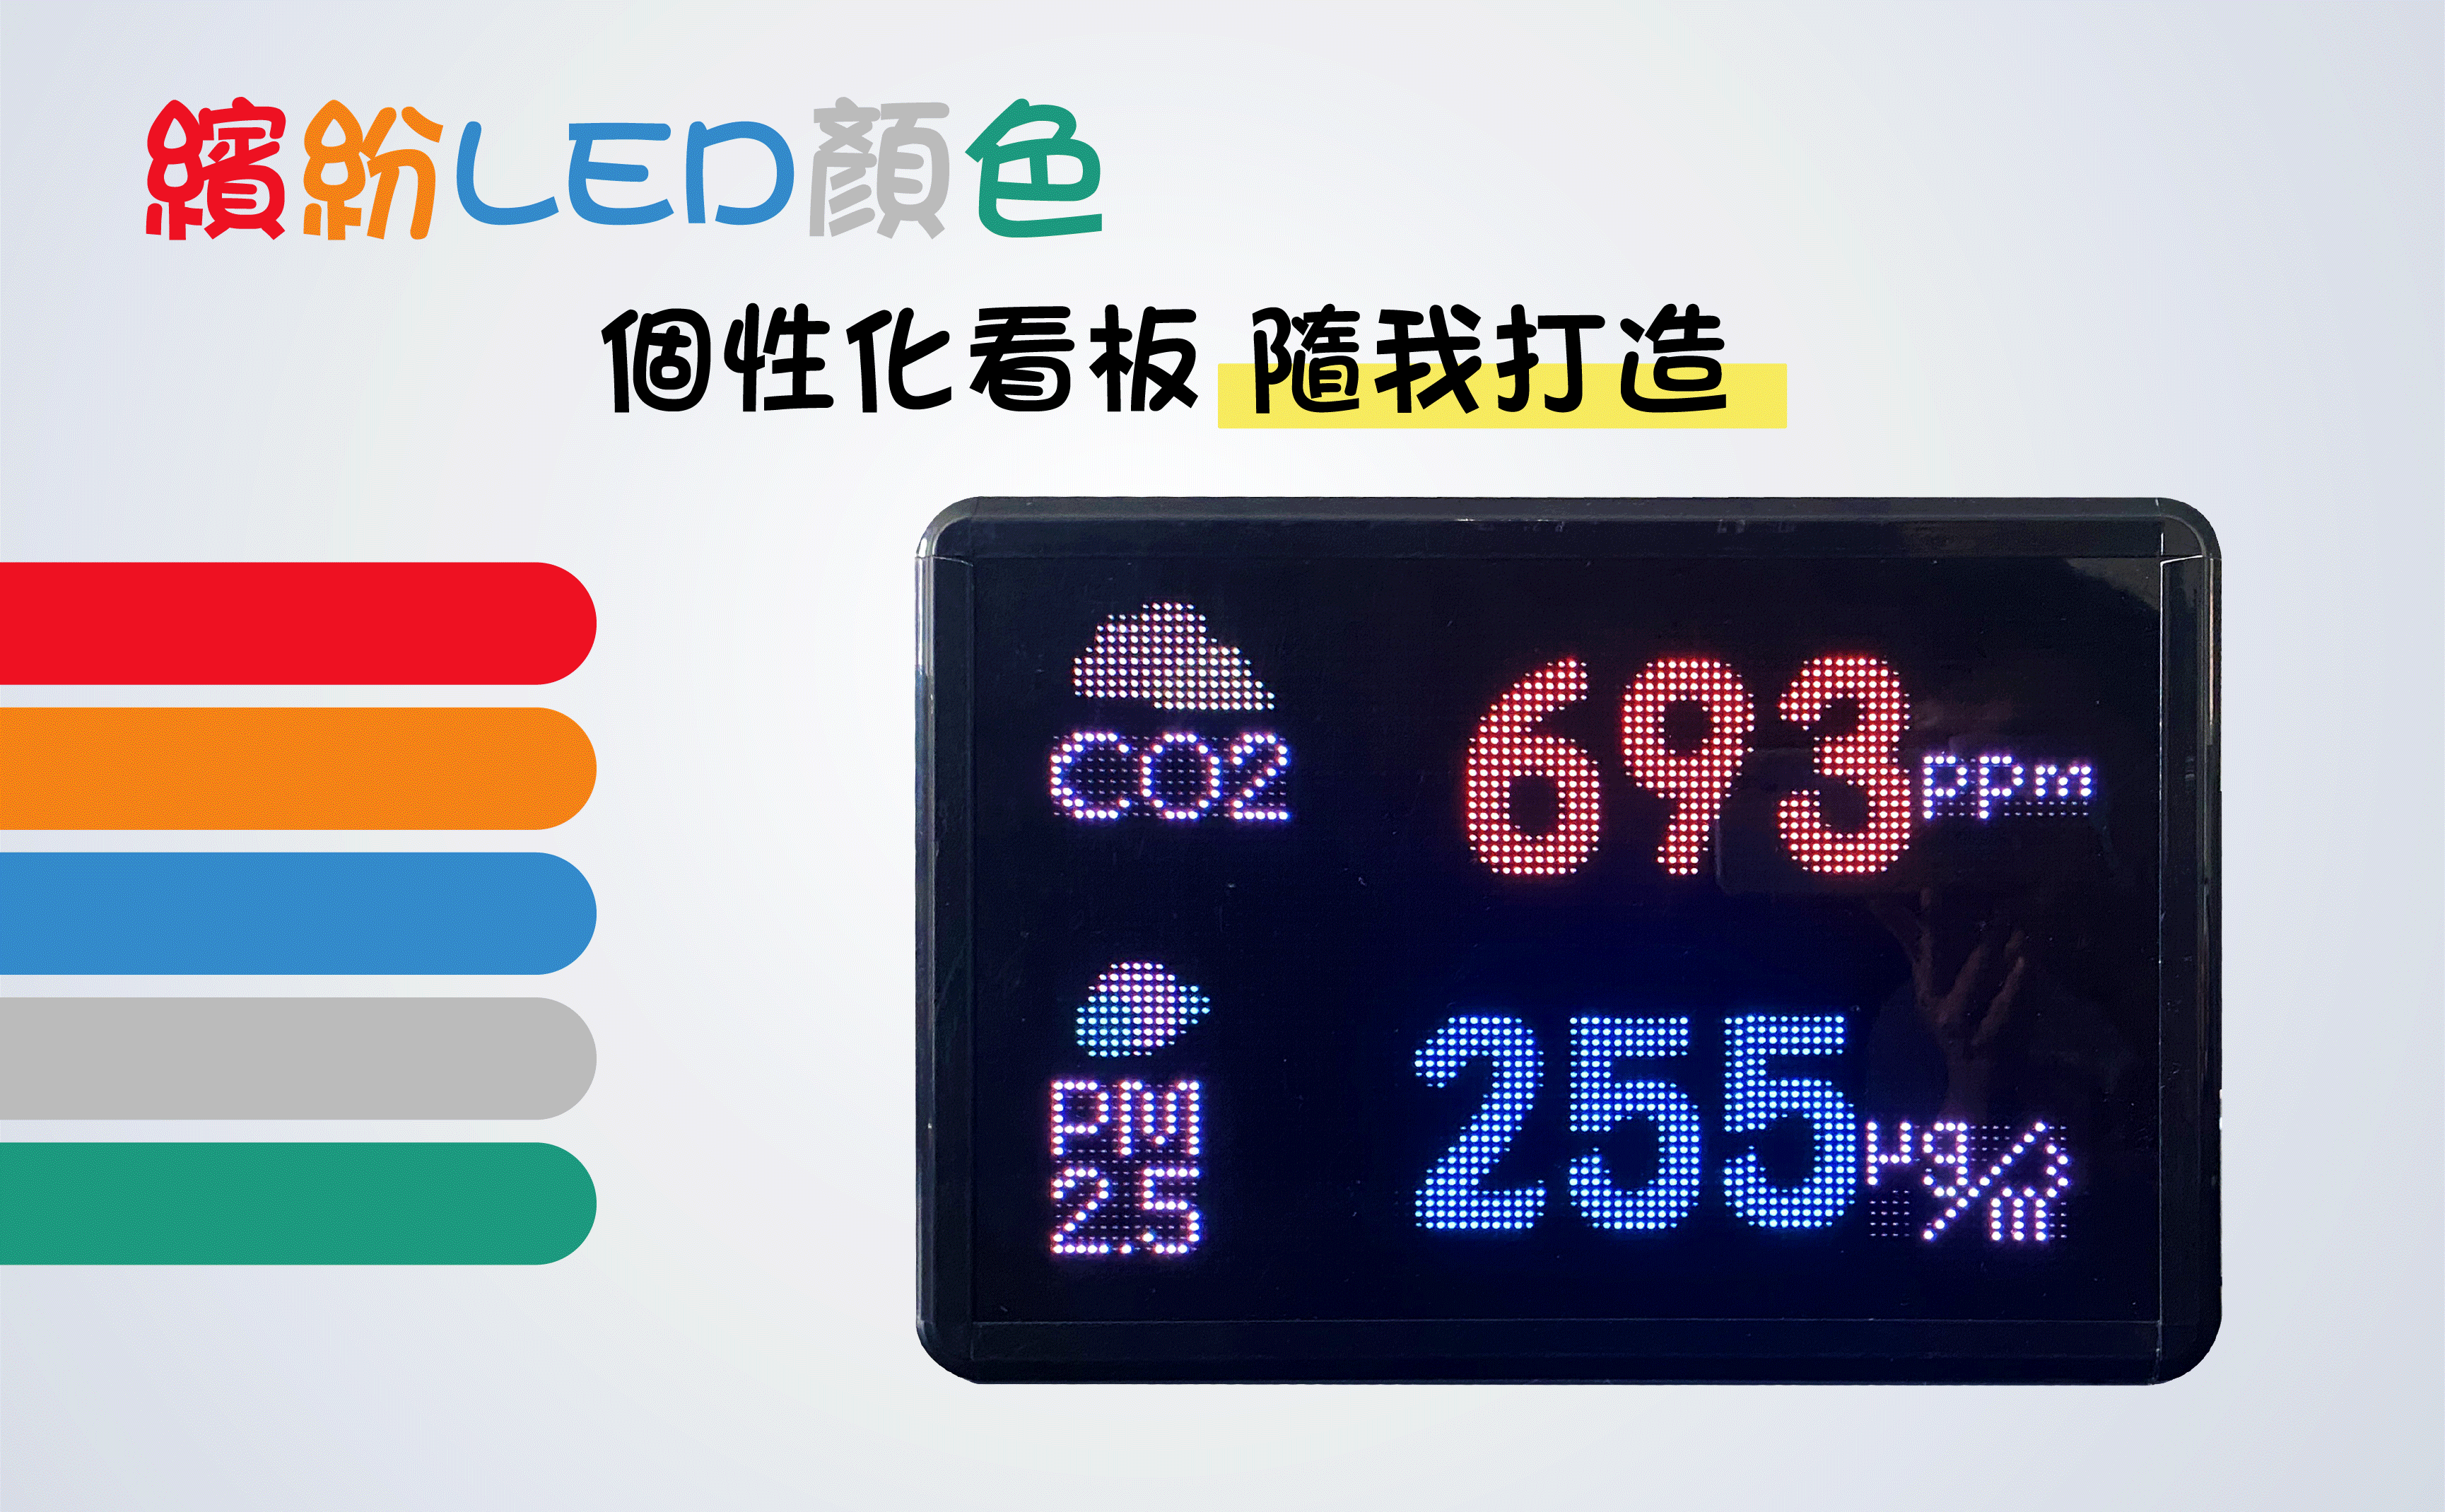 六合一空氣品質偵測,壁掛式顯示看板,藍牙傳輸,溫濕度,甲醛,CO2,PM2.5,萬年曆,警報提醒,數據記錄,免費APP,無線傳輸